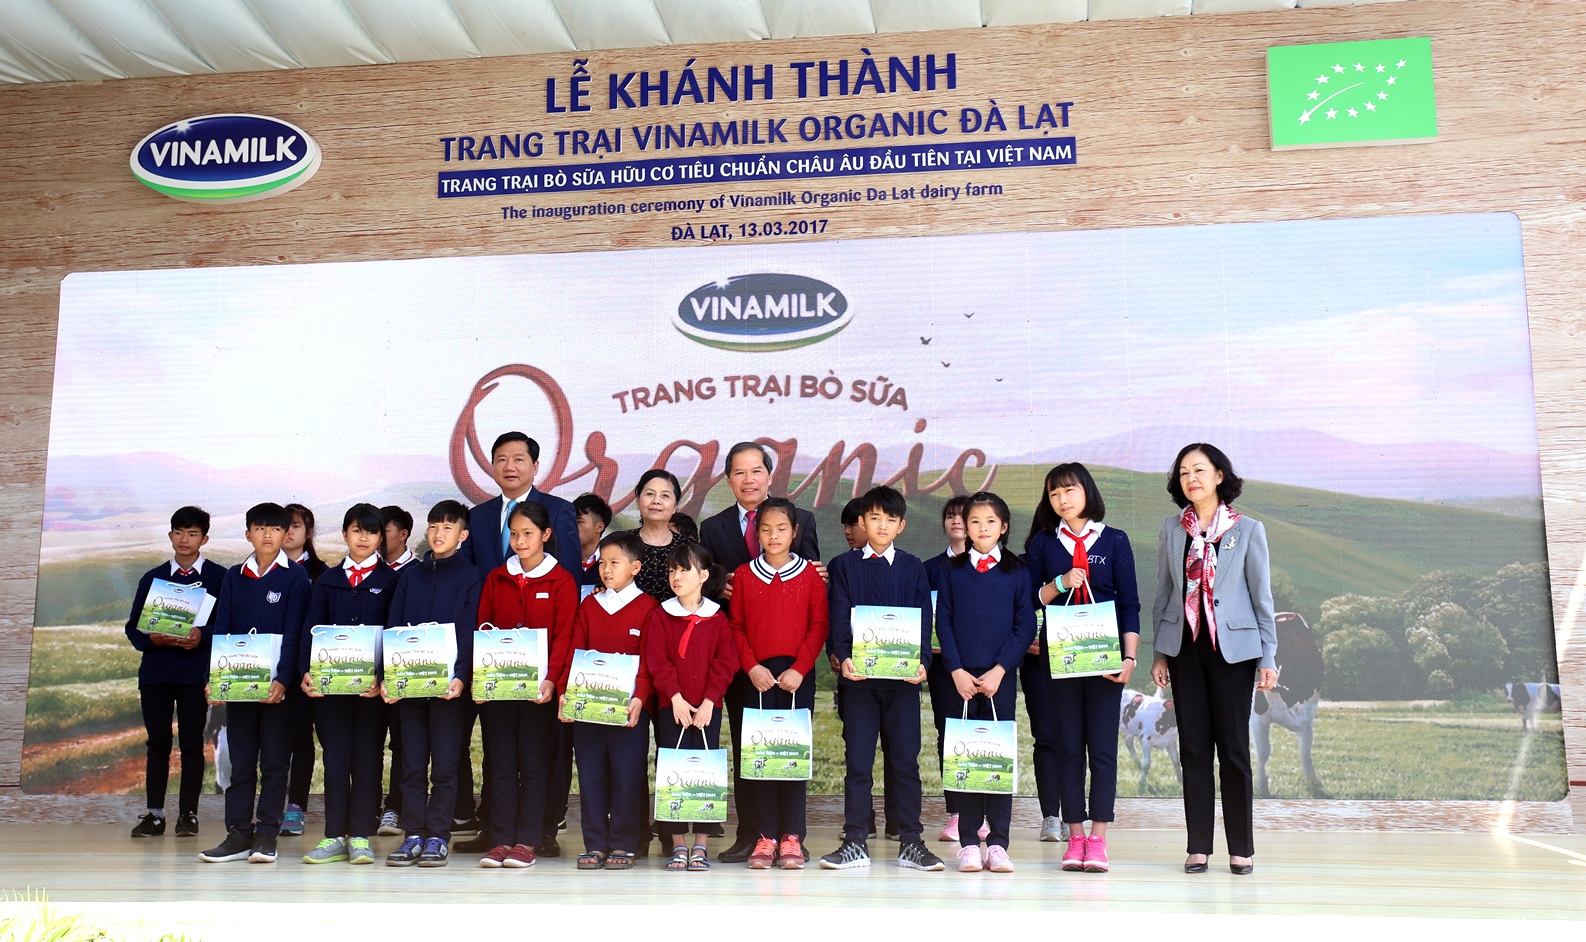 Dịp này, Vinamilk cũng trao tặng sữa cho trẻ em cơ nhỡ của trung tâm bảo trợ xã hội tỉnh Lâm Đồng. Các em ở trung tâm sẽ được uống sữa miễn phí trong vòng 3 tháng liên tục